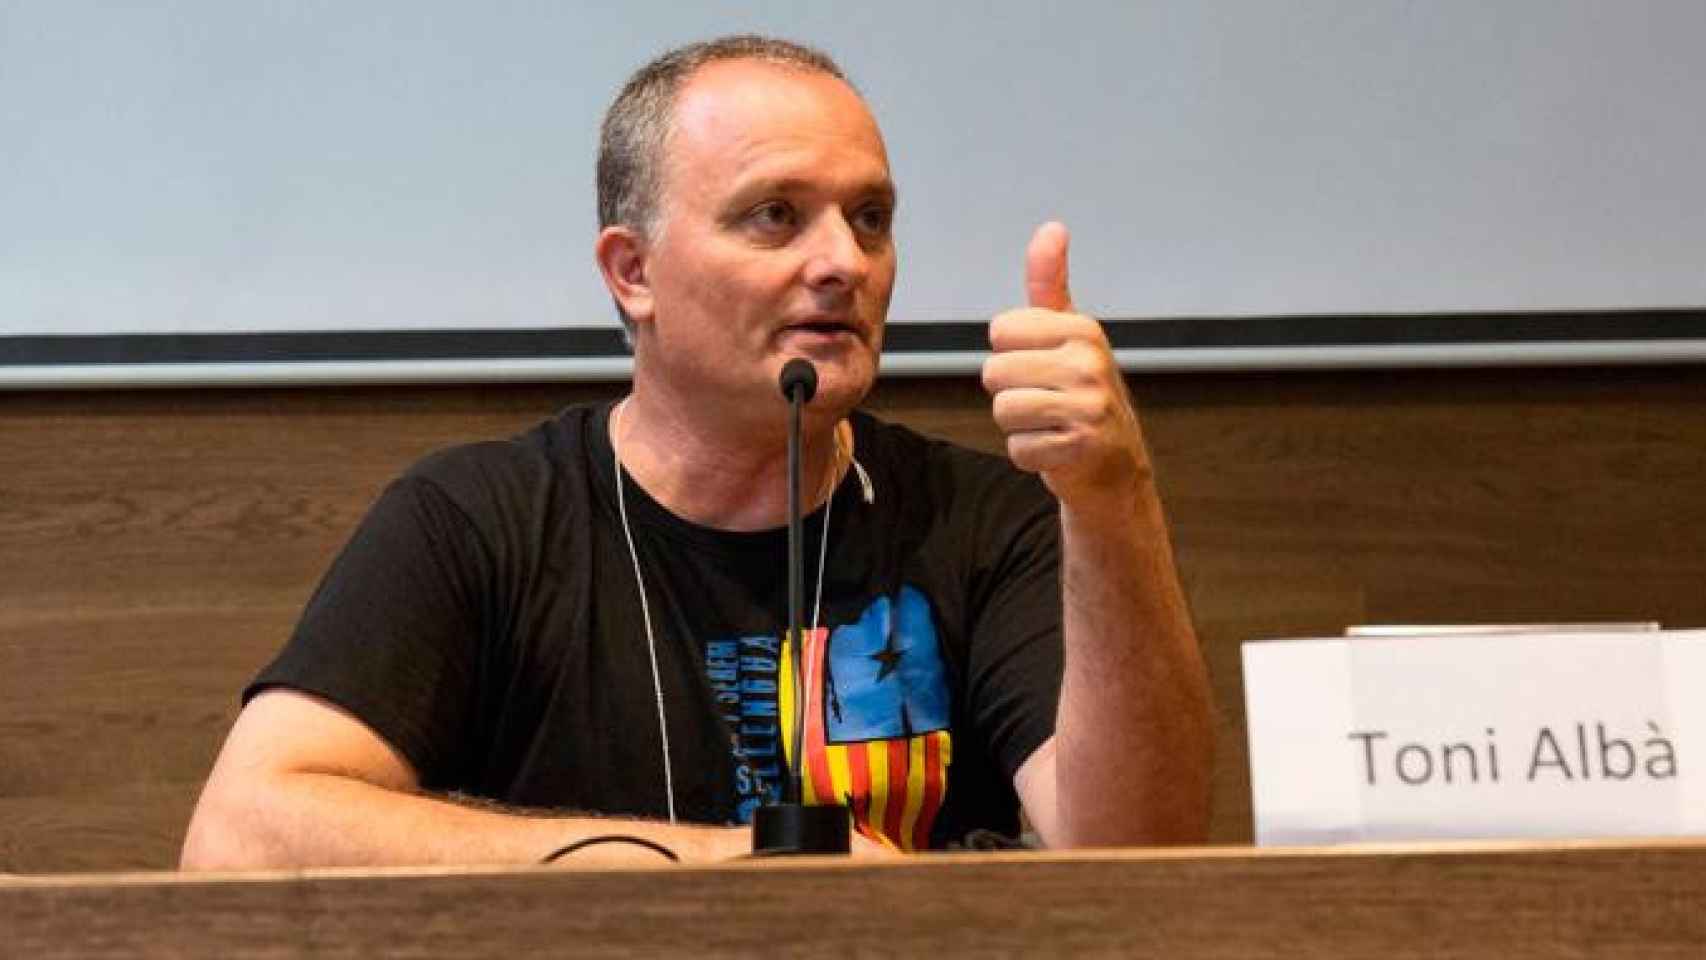 El polémico humorista Toni Albà, durante un acto político independentista / CG